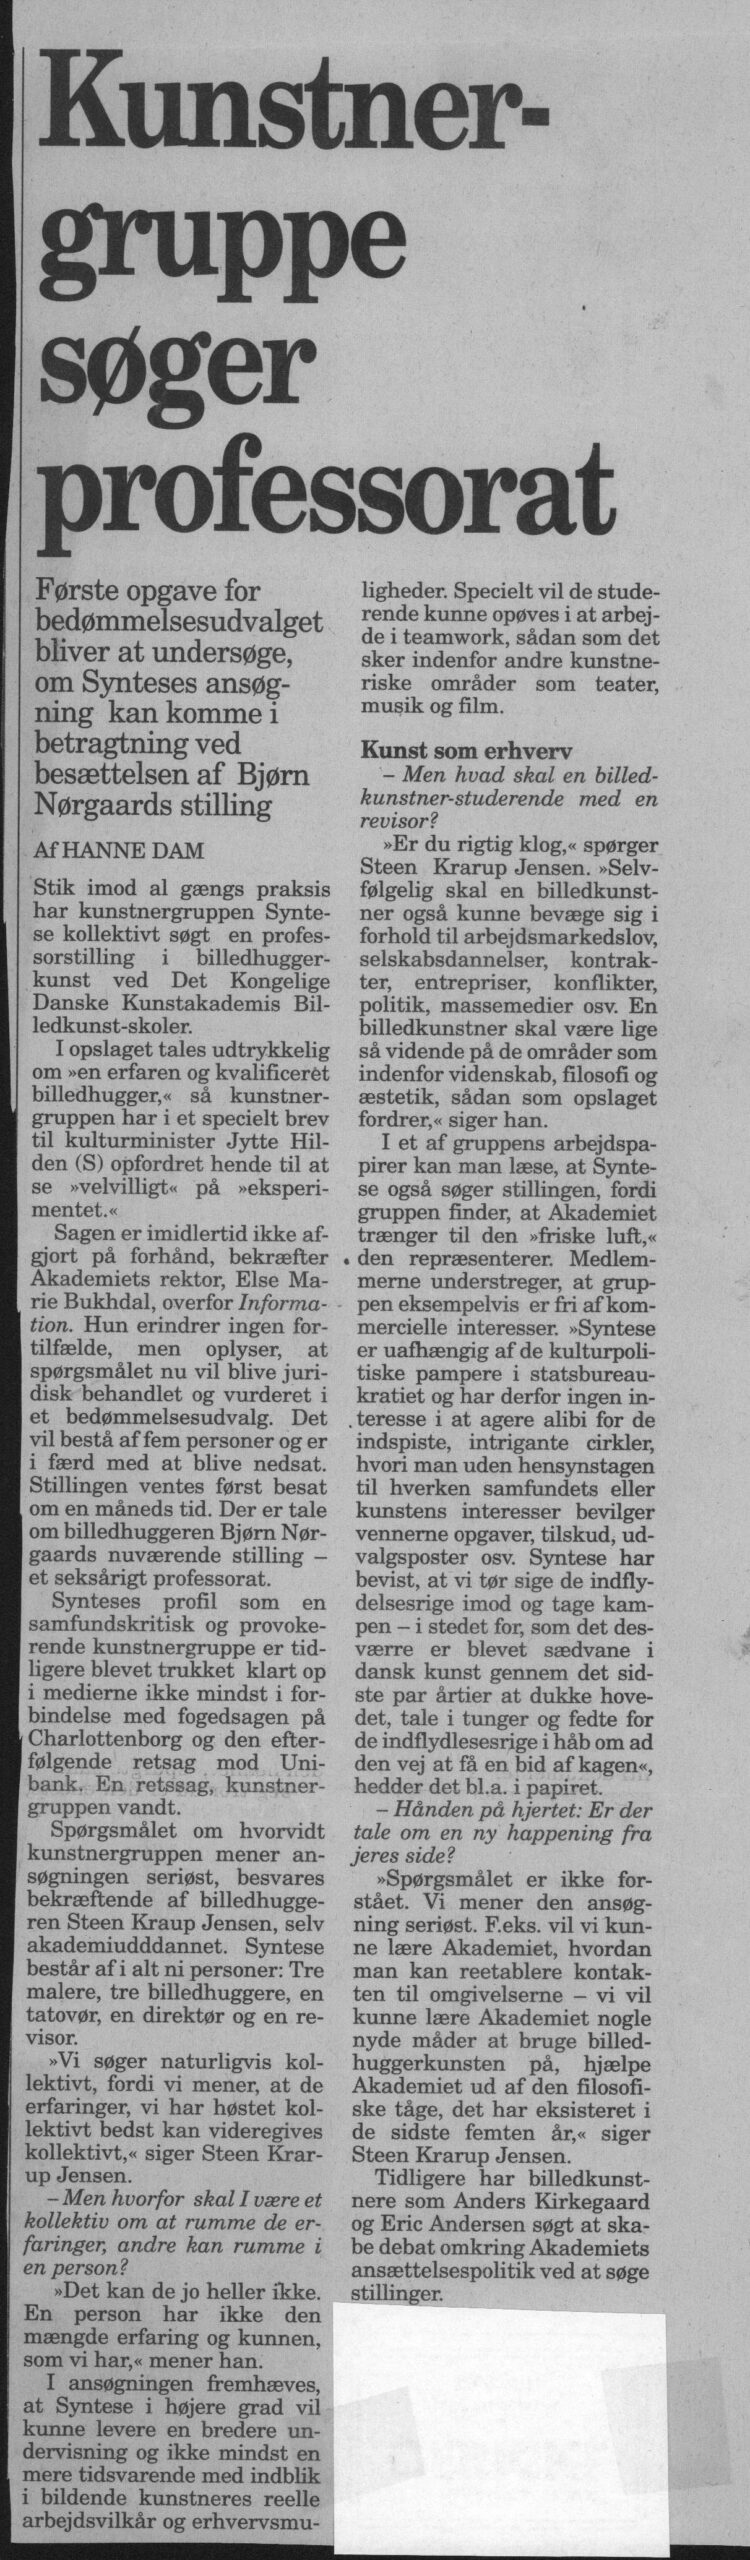 Kunstnergruppe søger professorat. Omtale (Kollektivt professorat 1994). Hanne Dam. Information.